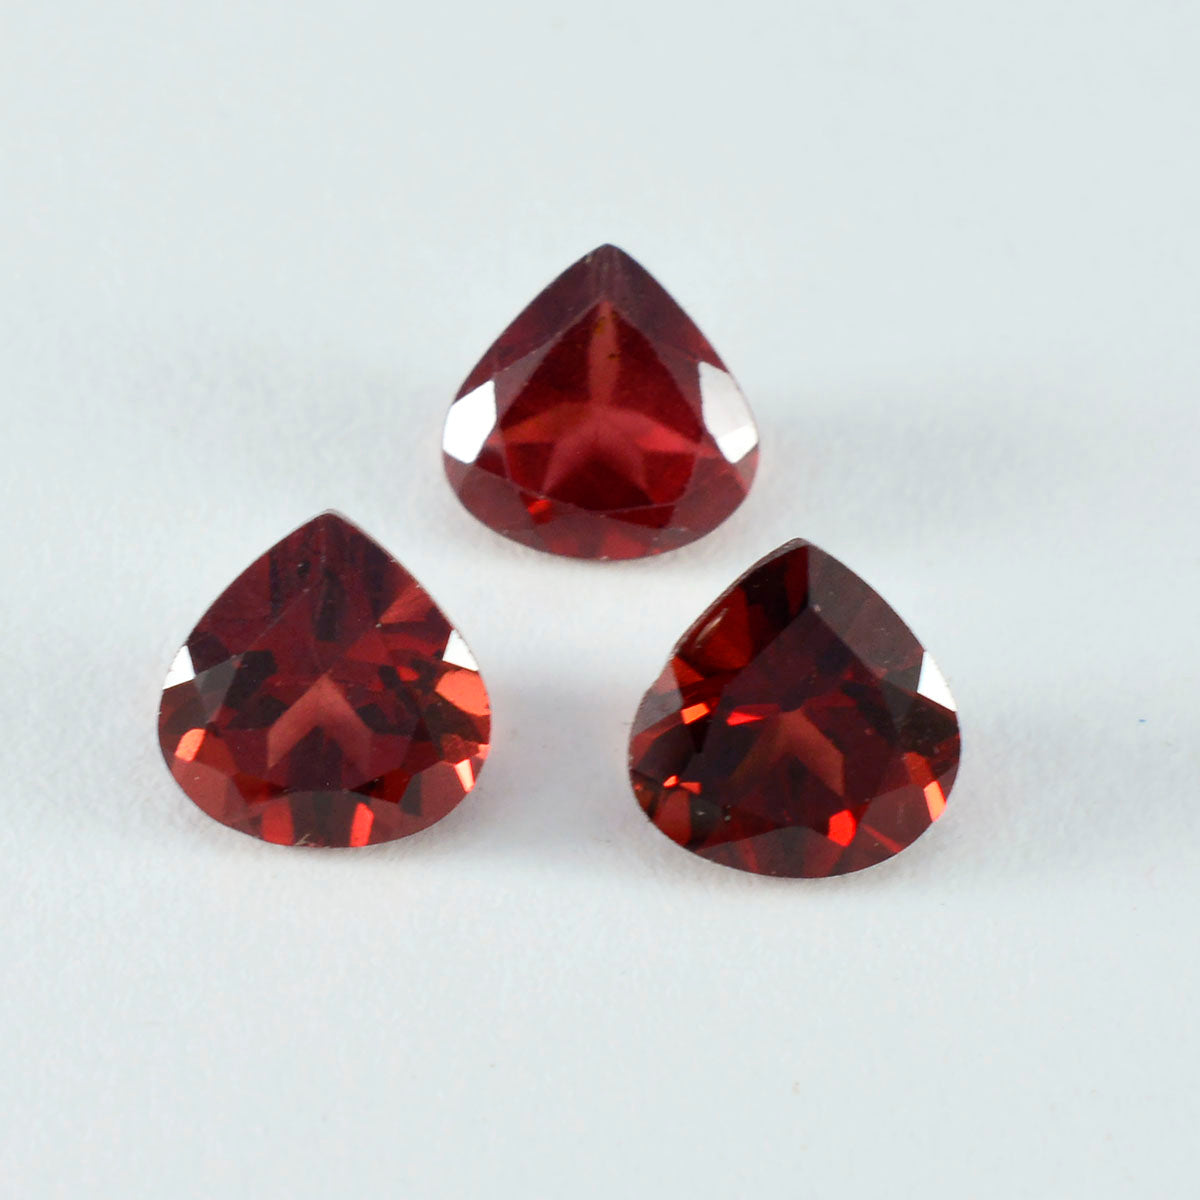 riyogems 1 шт. натуральный красный гранат ограненный 12x12 мм в форме сердца поразительного качества, свободный драгоценный камень